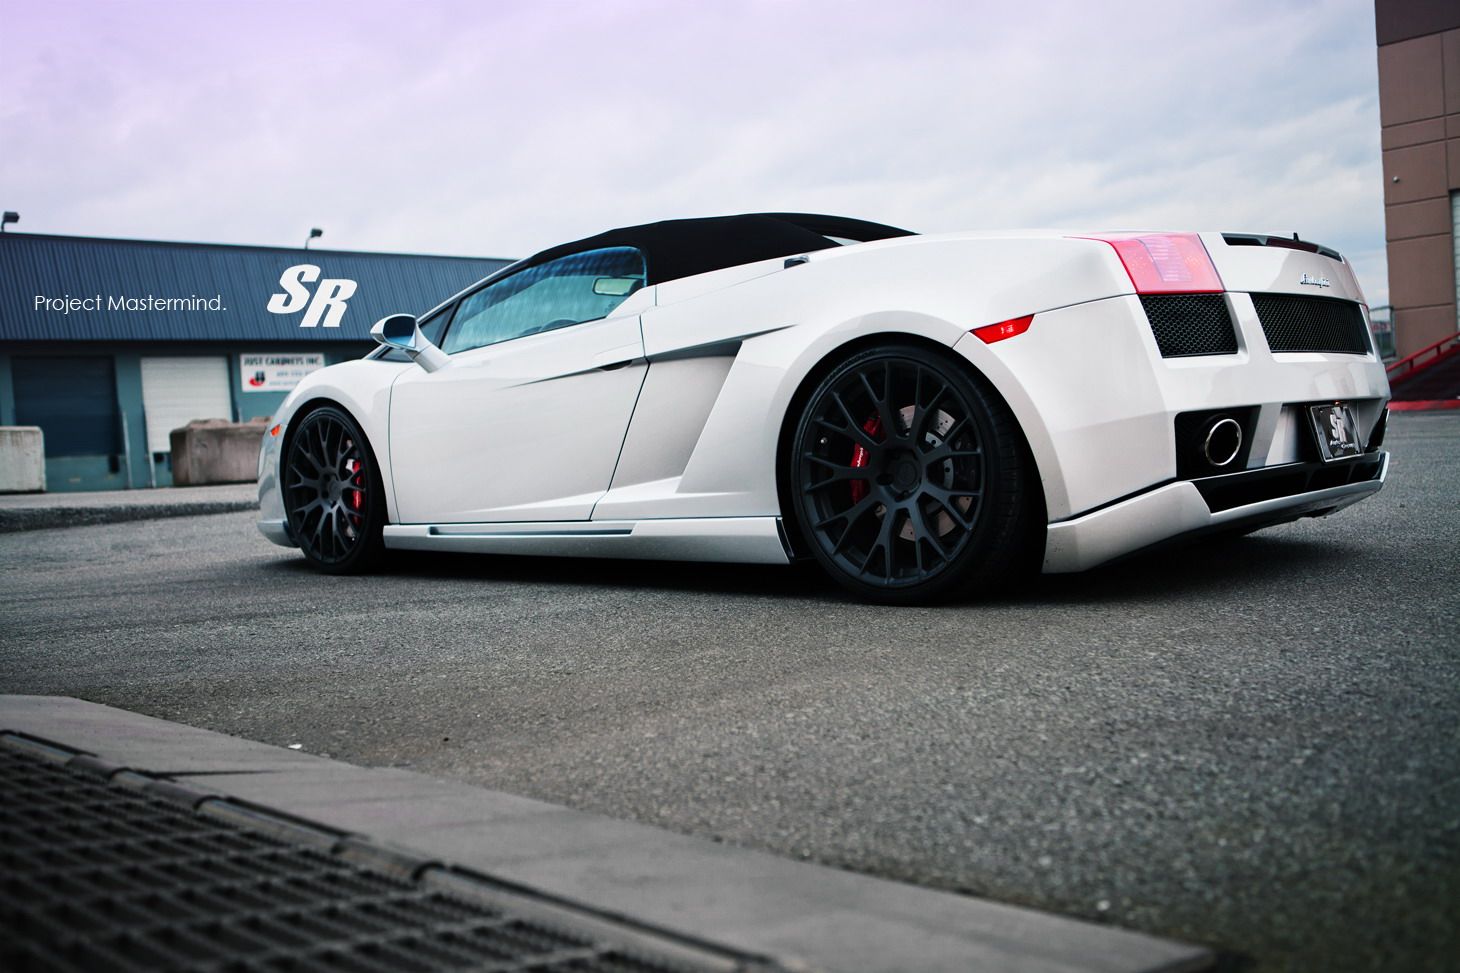 2012 Lamborghini Gallardo Project Mastermind by SR Auto Group